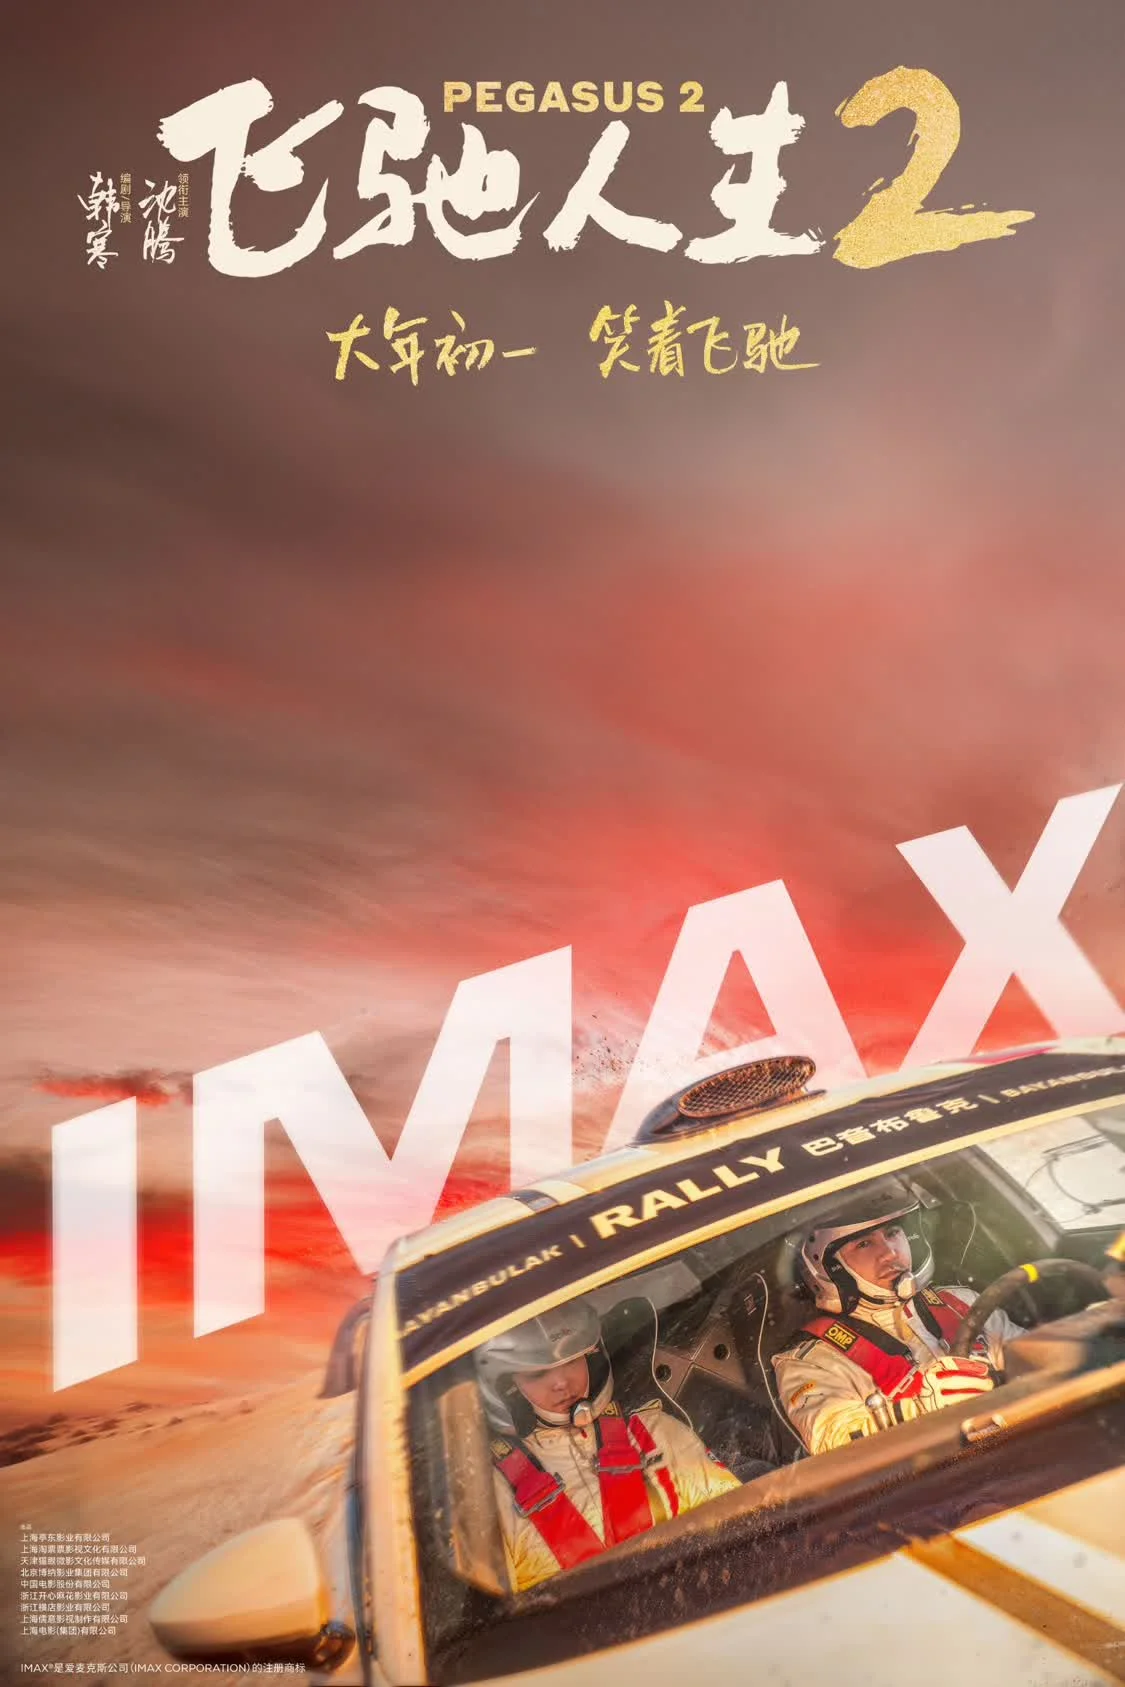 《飞驰人生2》即将登陆IMAX影院 尹正力荐“没有比IMAX更适合的方式”